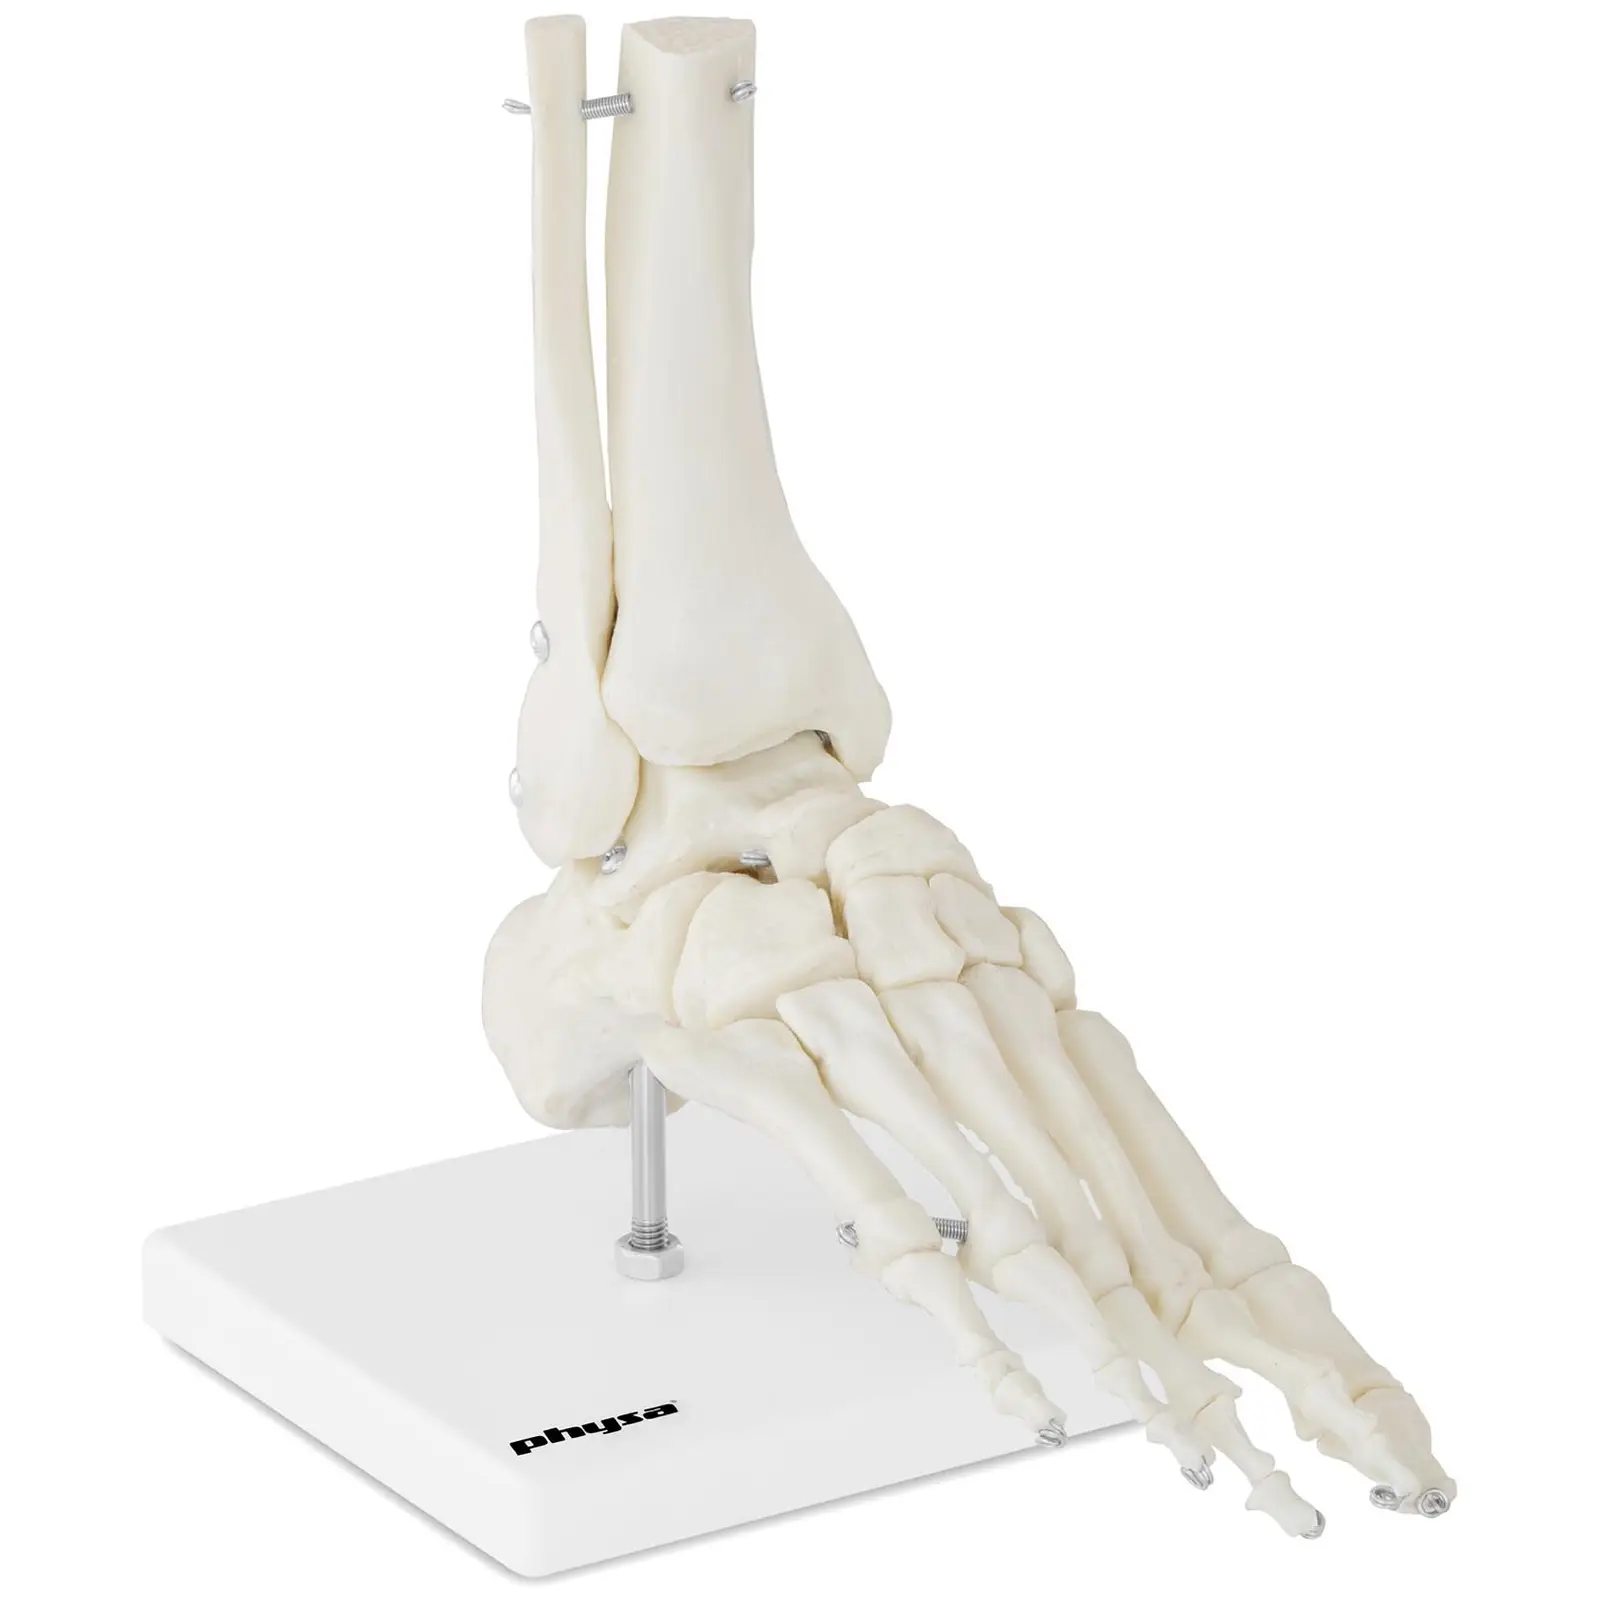 Model kostry chodidla a kotníku